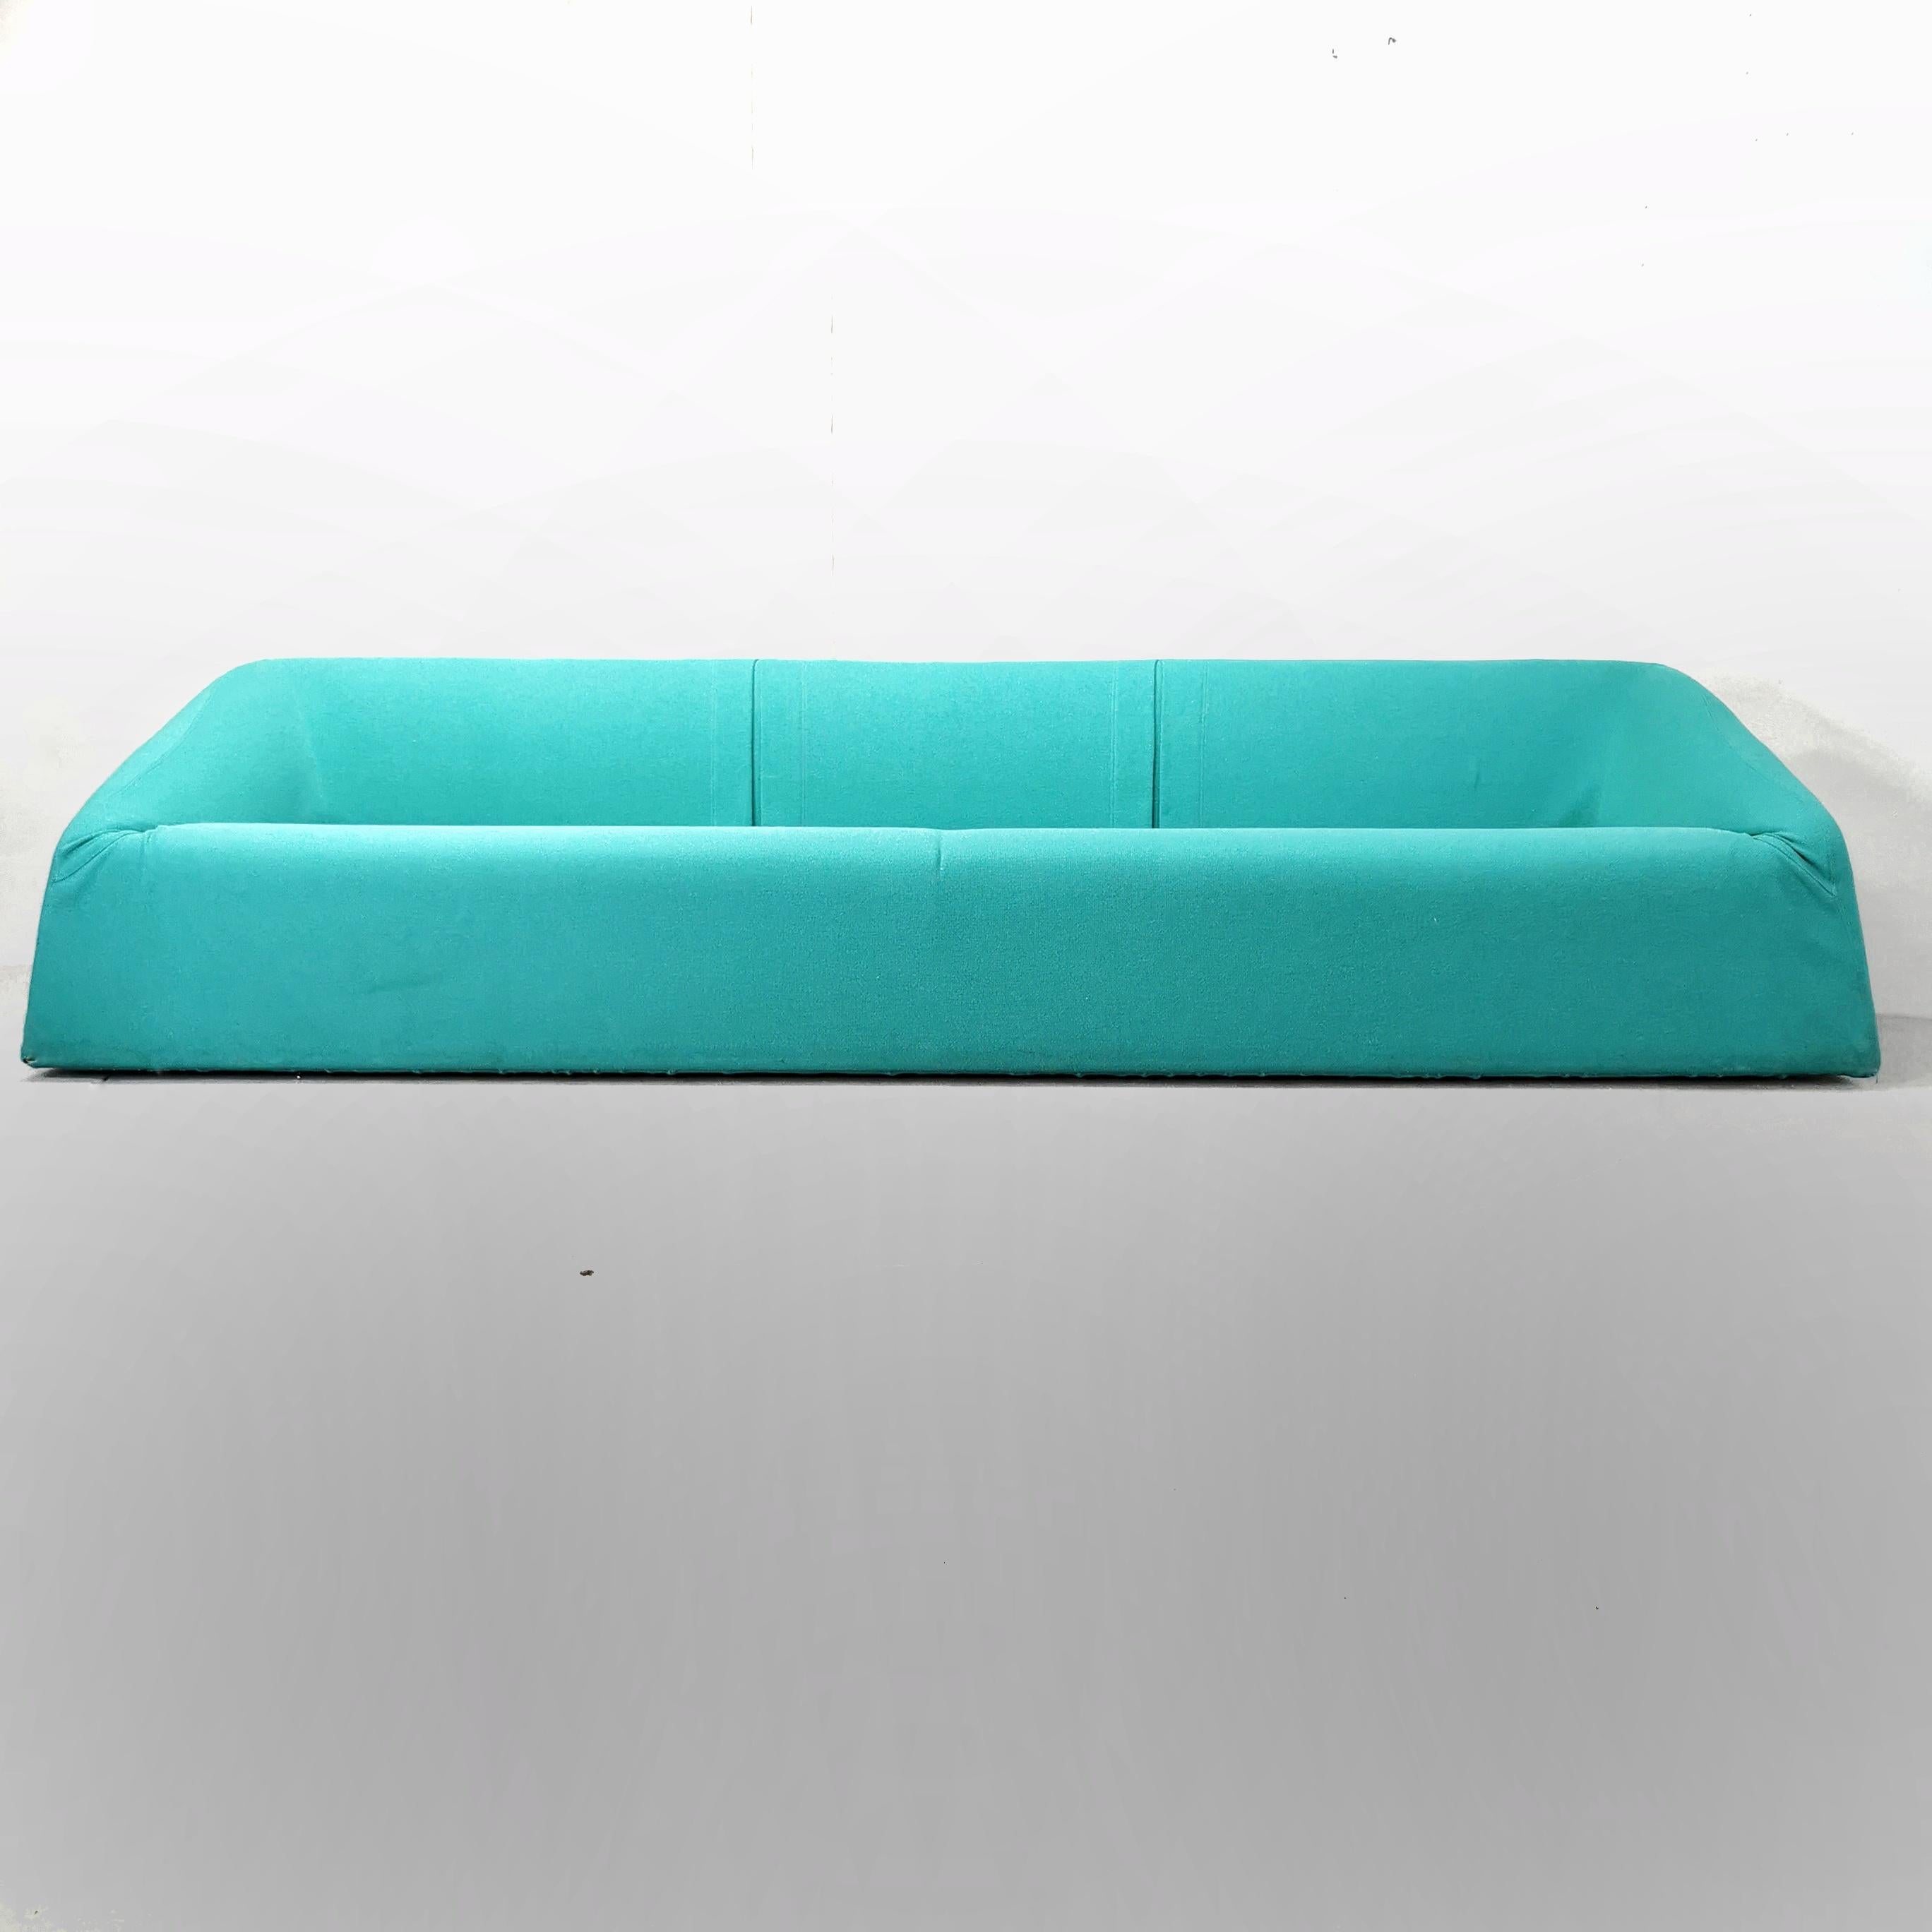 Divano Siviglia è stato disegnato da Kazuhide Takahama per Studio Simon nel 1976. Il divano è realizzato con imbottitura in espanso sagomato e il rivestimento in tessuto sfoderabile, è fissato alla struttura per mezzo di velcro. Il Divano si